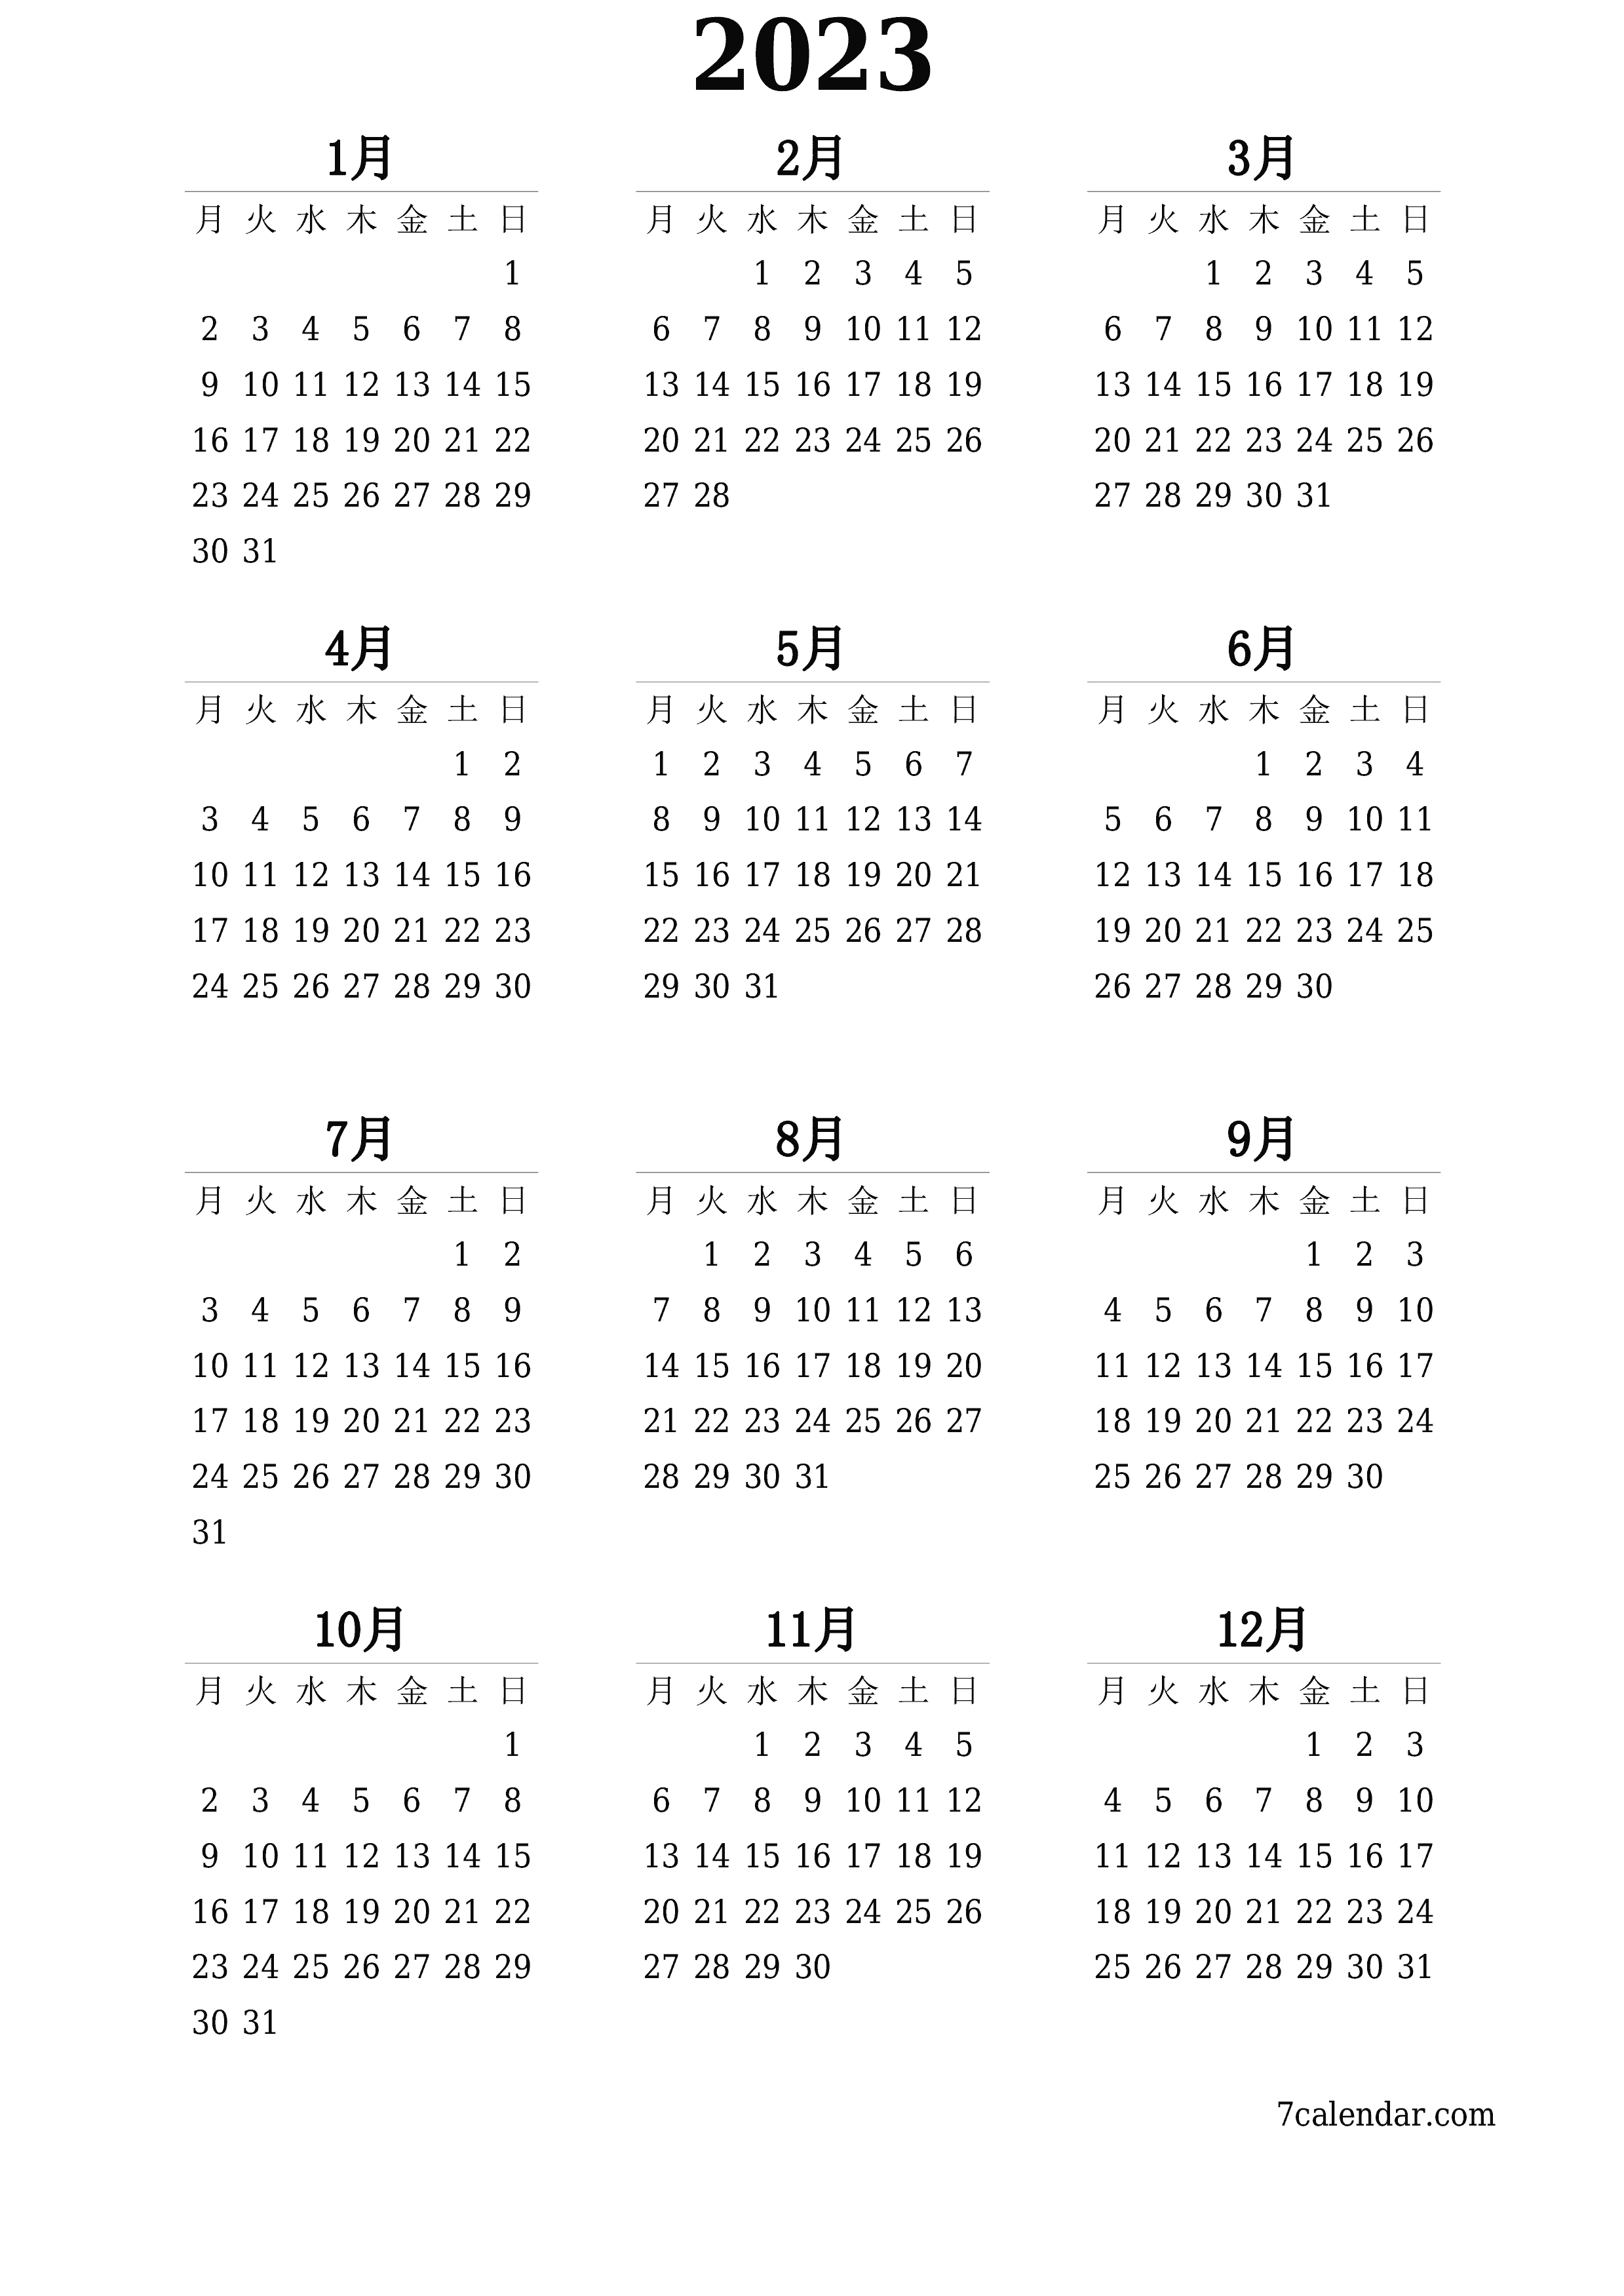 メモ付きの2023年の空の年間プランナーカレンダー、保存してPDFに印刷PNG Japanese - 7calendar.com